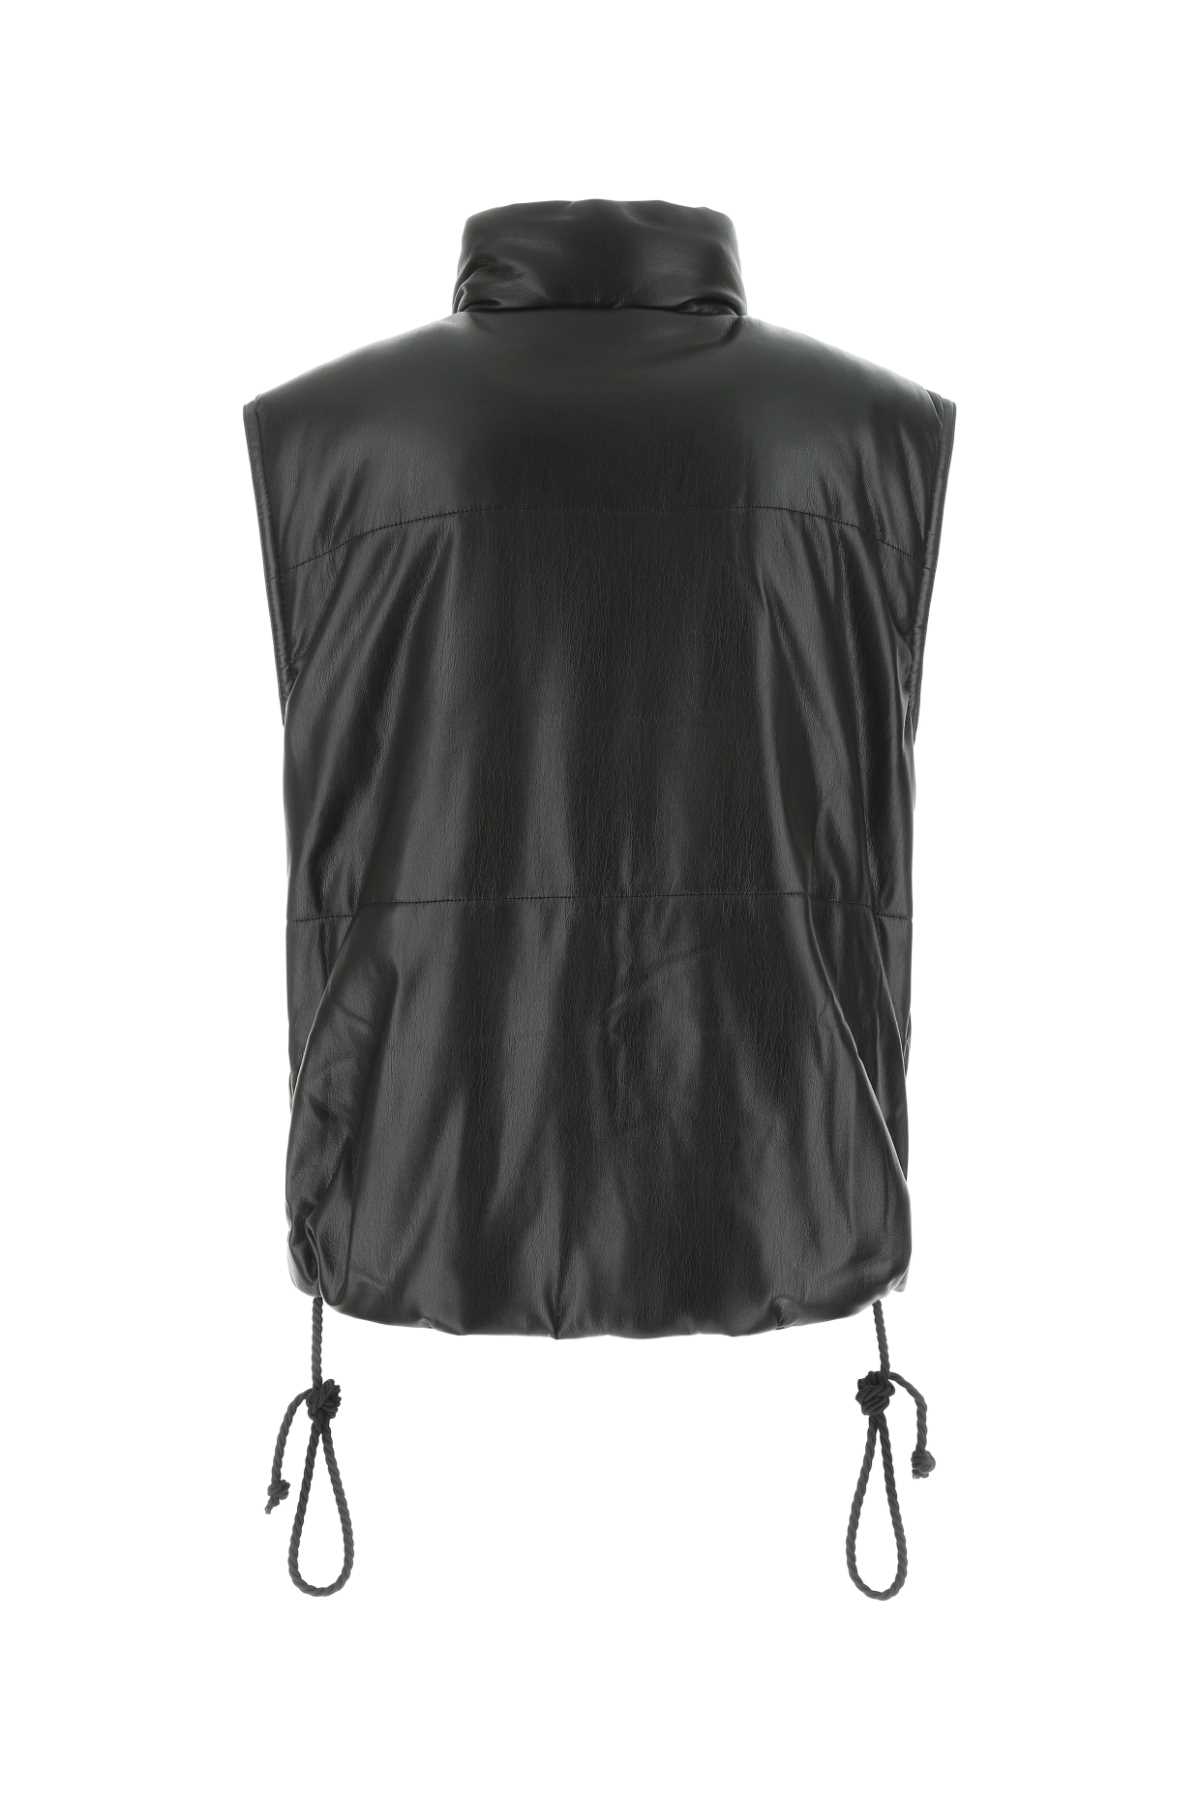 Shop Nanushka Black Synthetic Leather Padded Jacket